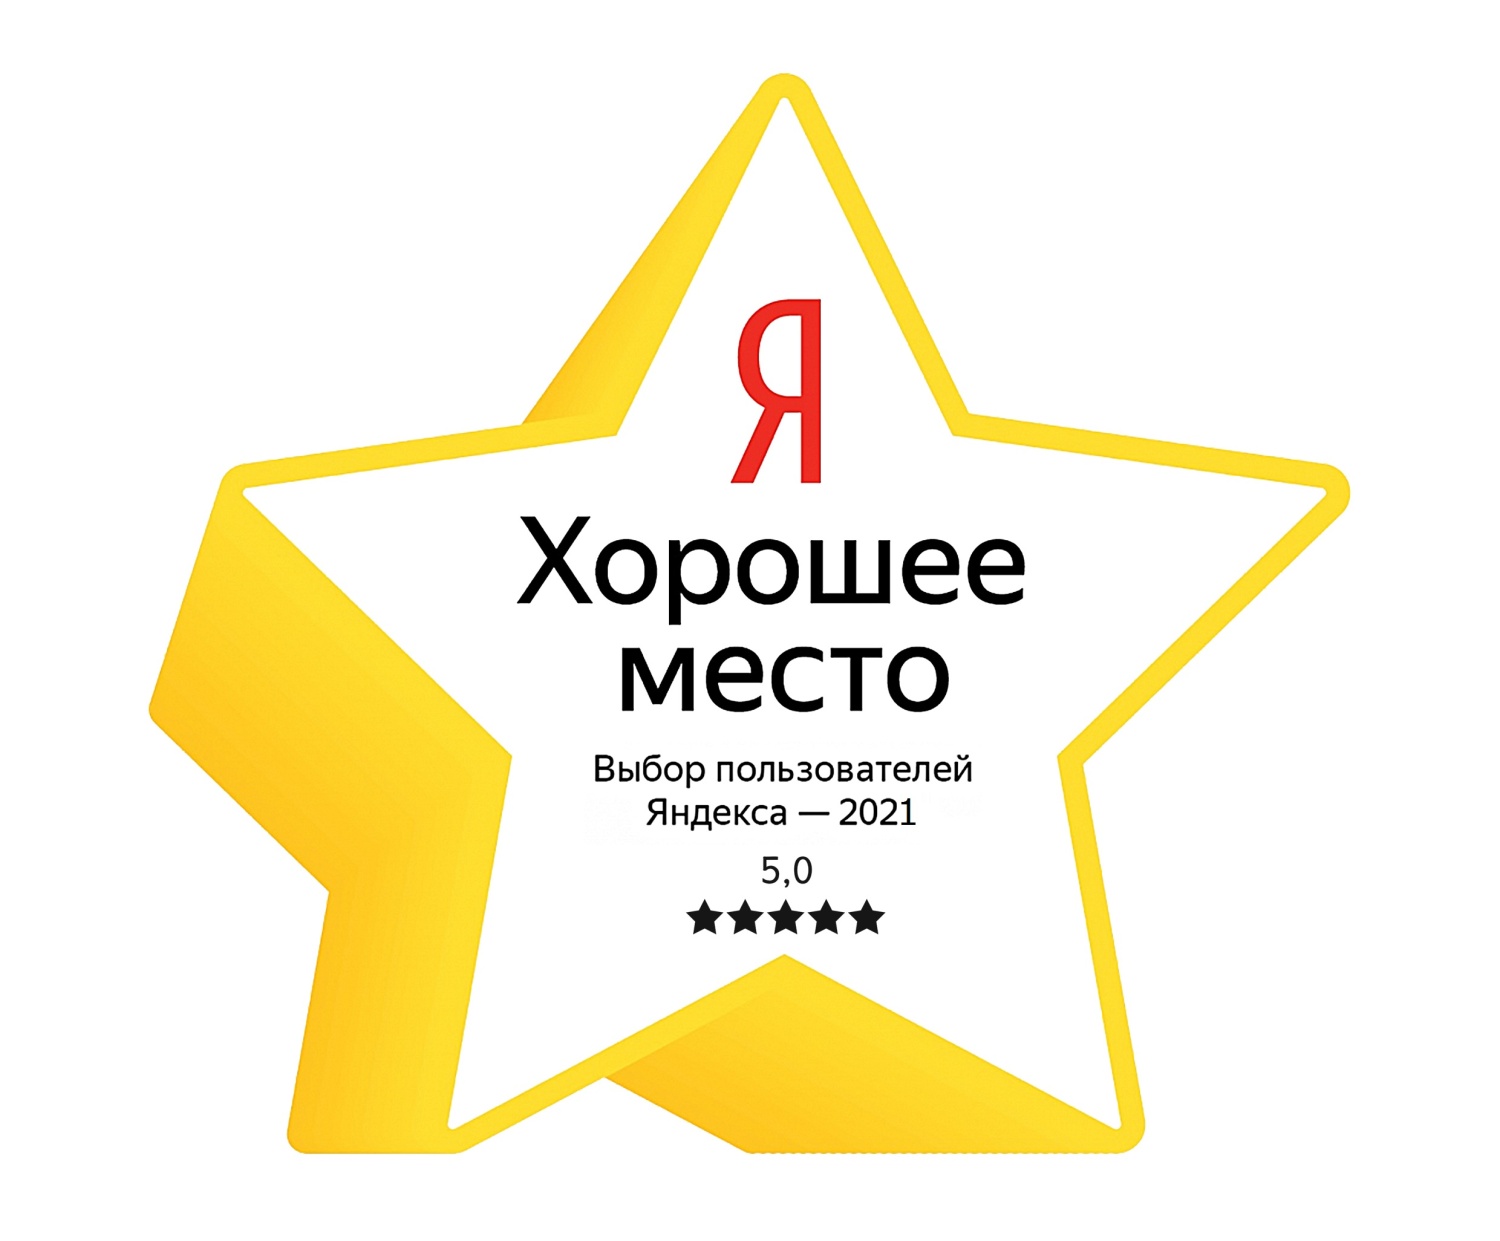 Яндекс 5.0